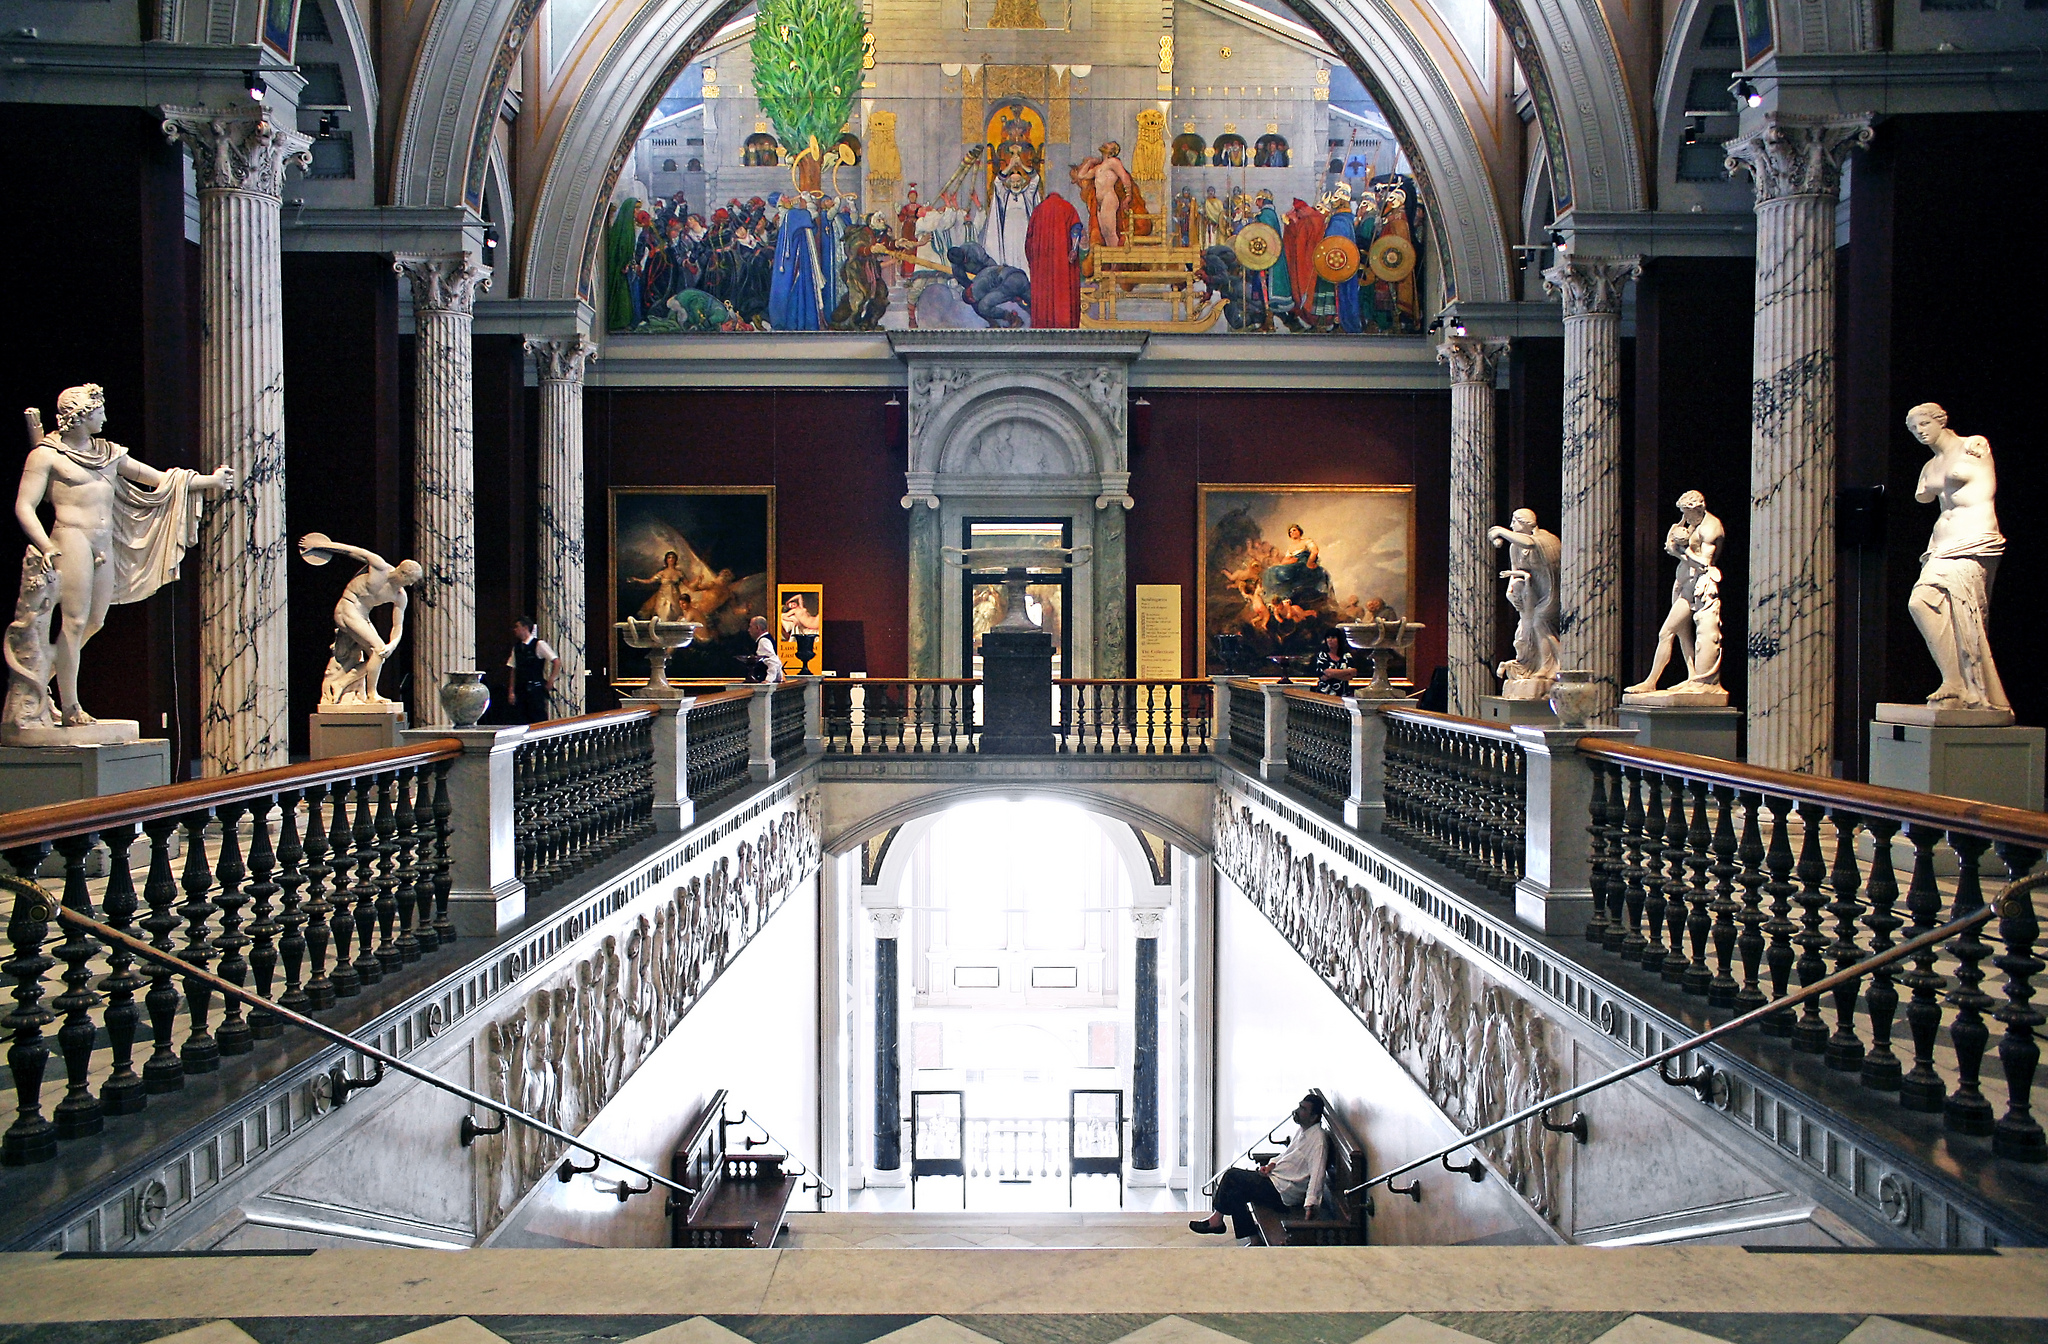 Национальный музей в Стокгольме